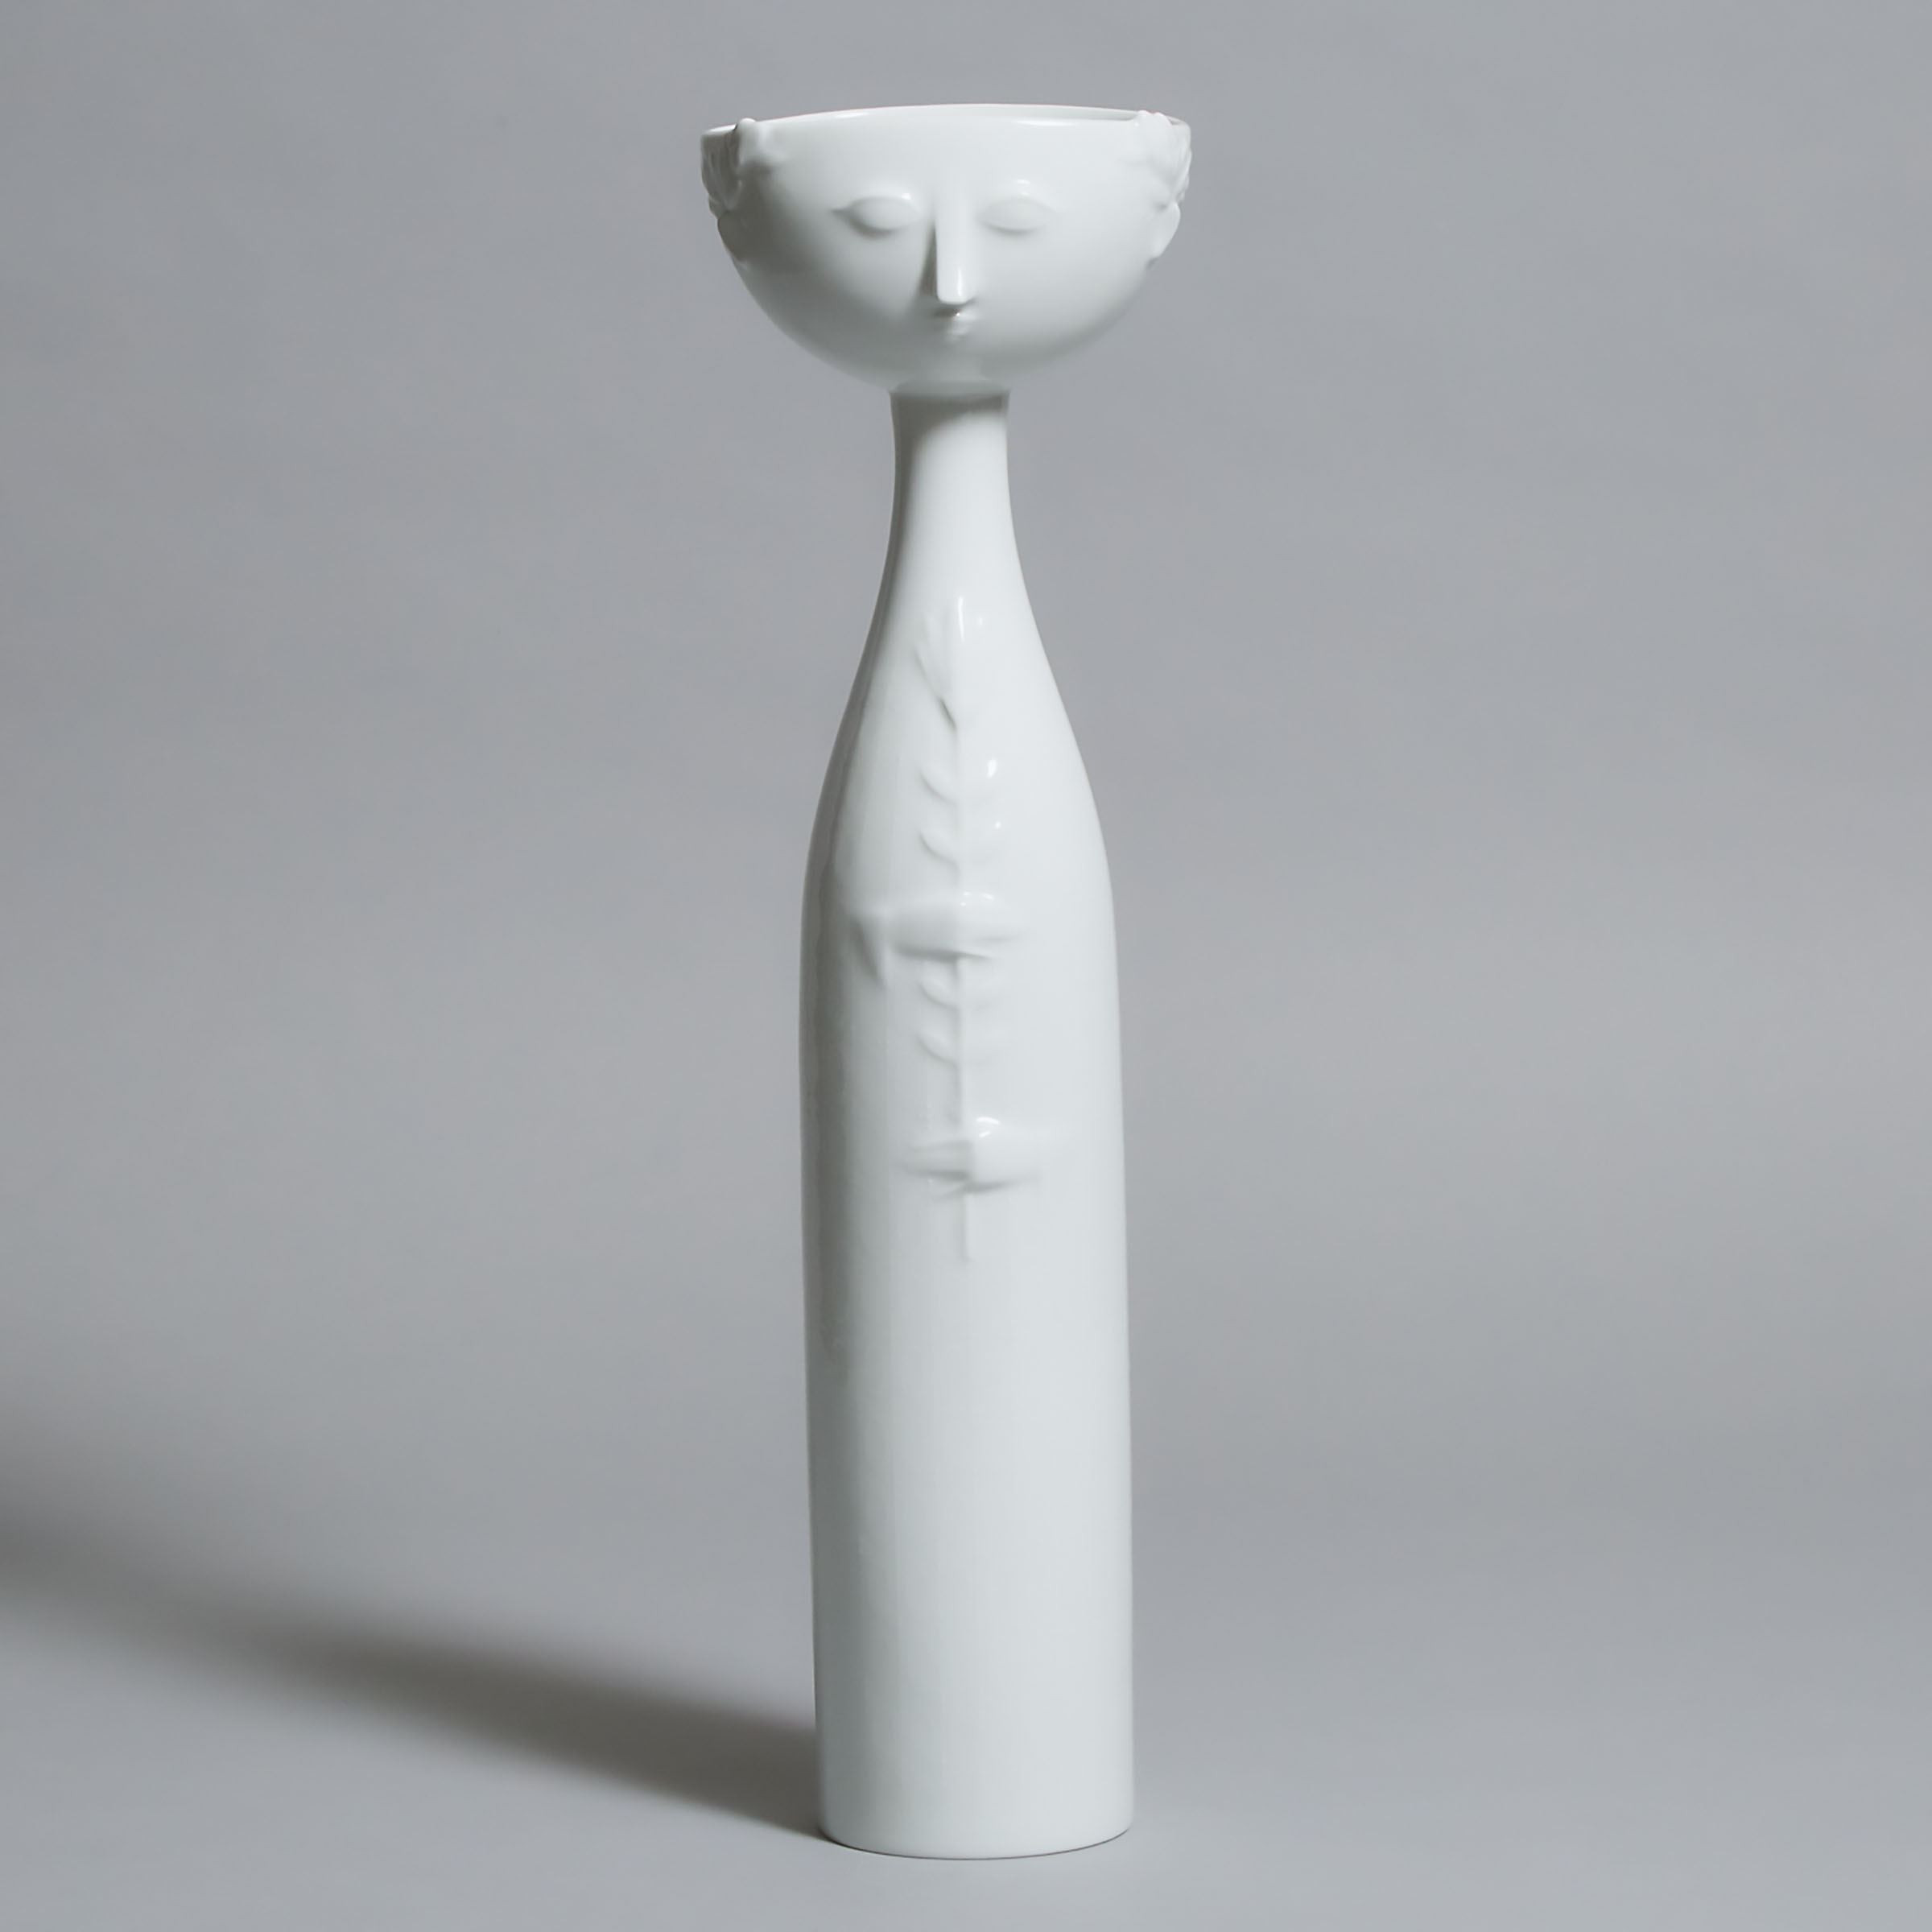 Rosenthal 'Eva' Vase, Bjorn Wiinblad, 20th century